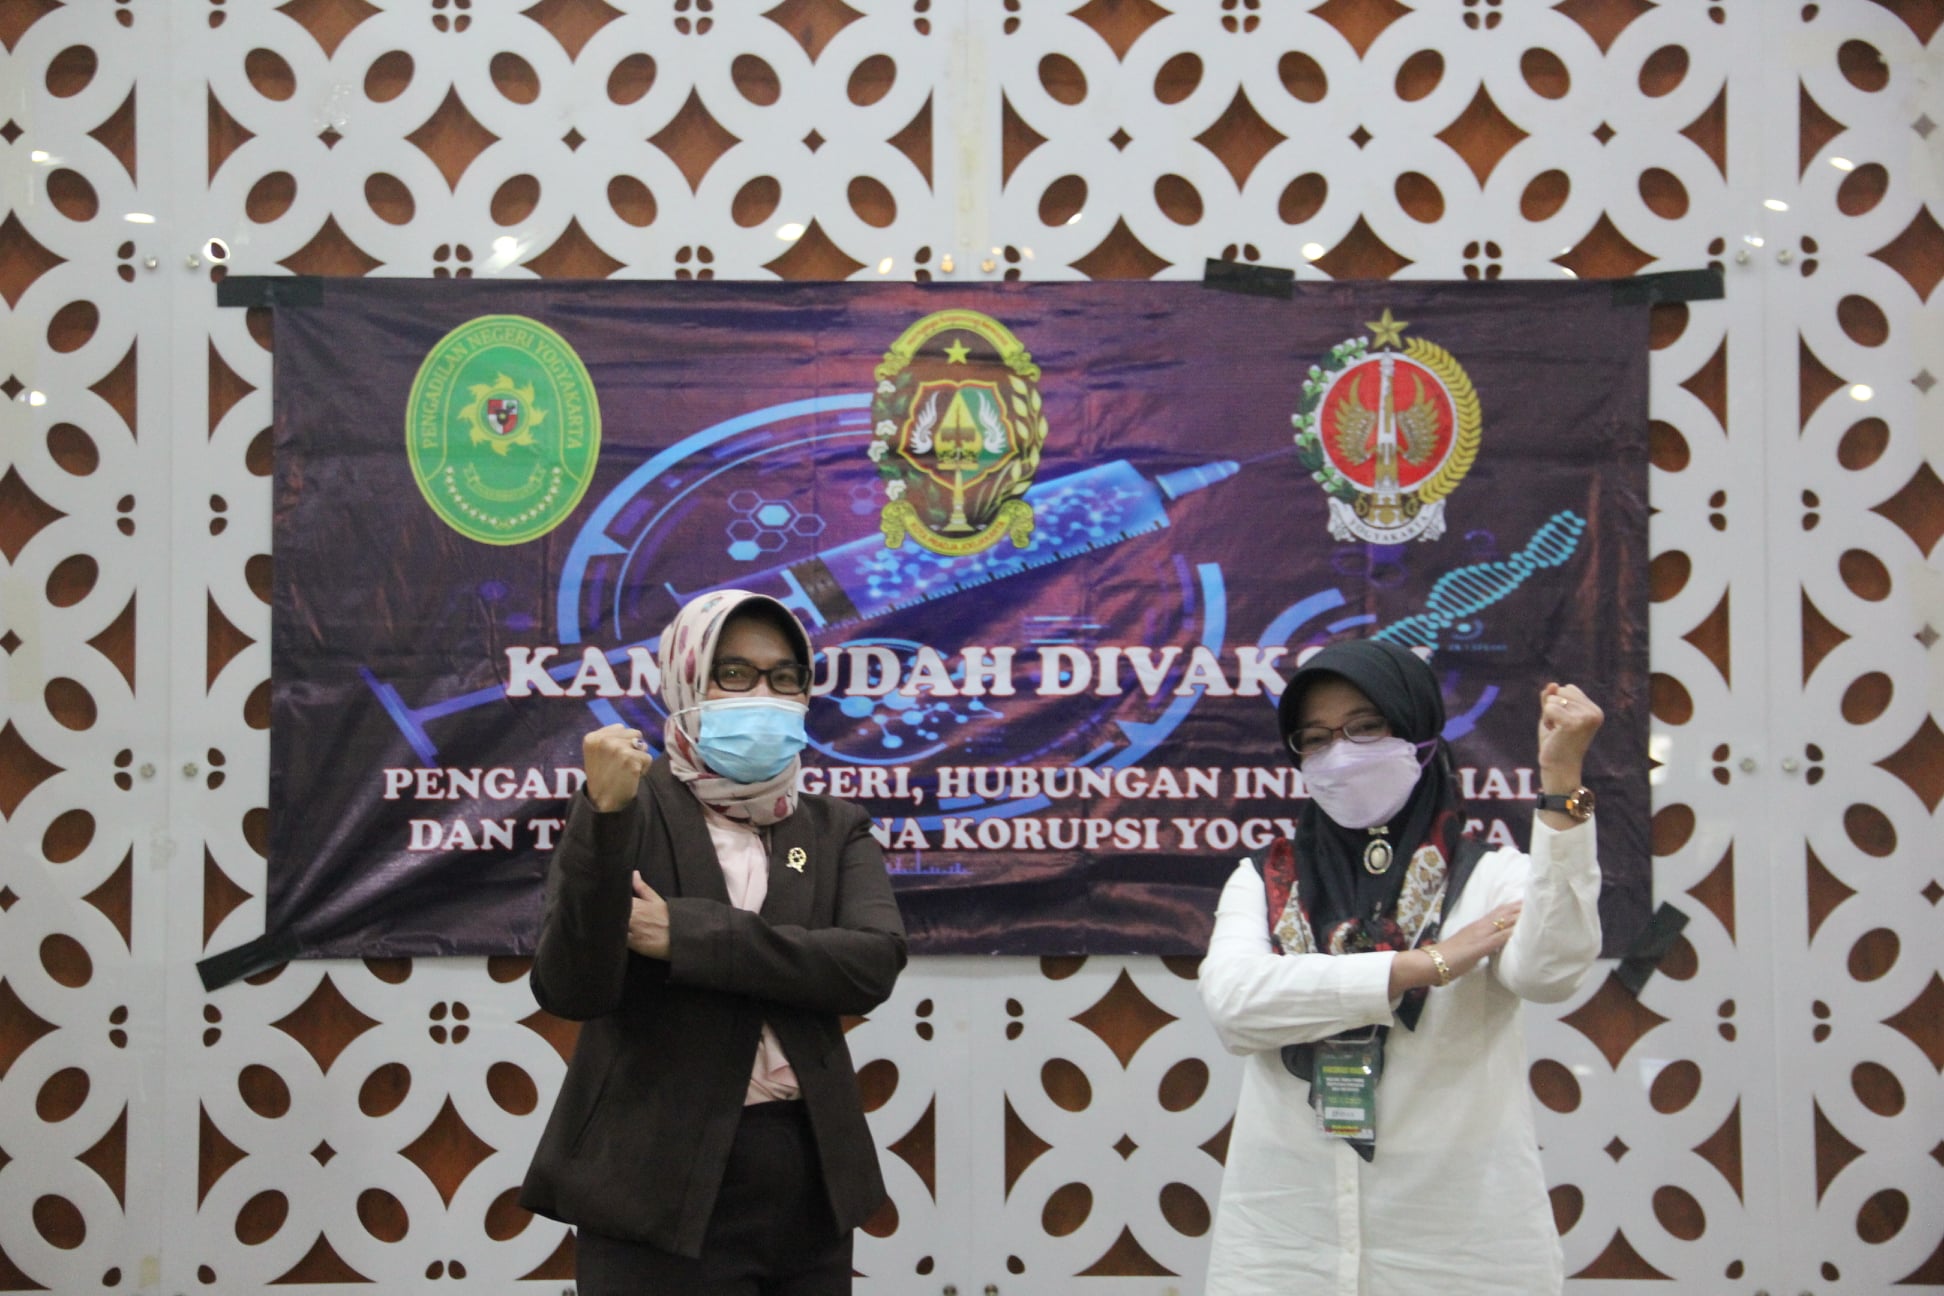 Pengadilan Negeri Yogyakarta Melakukan Vaksinasi Covid-19 Dosis Kedua